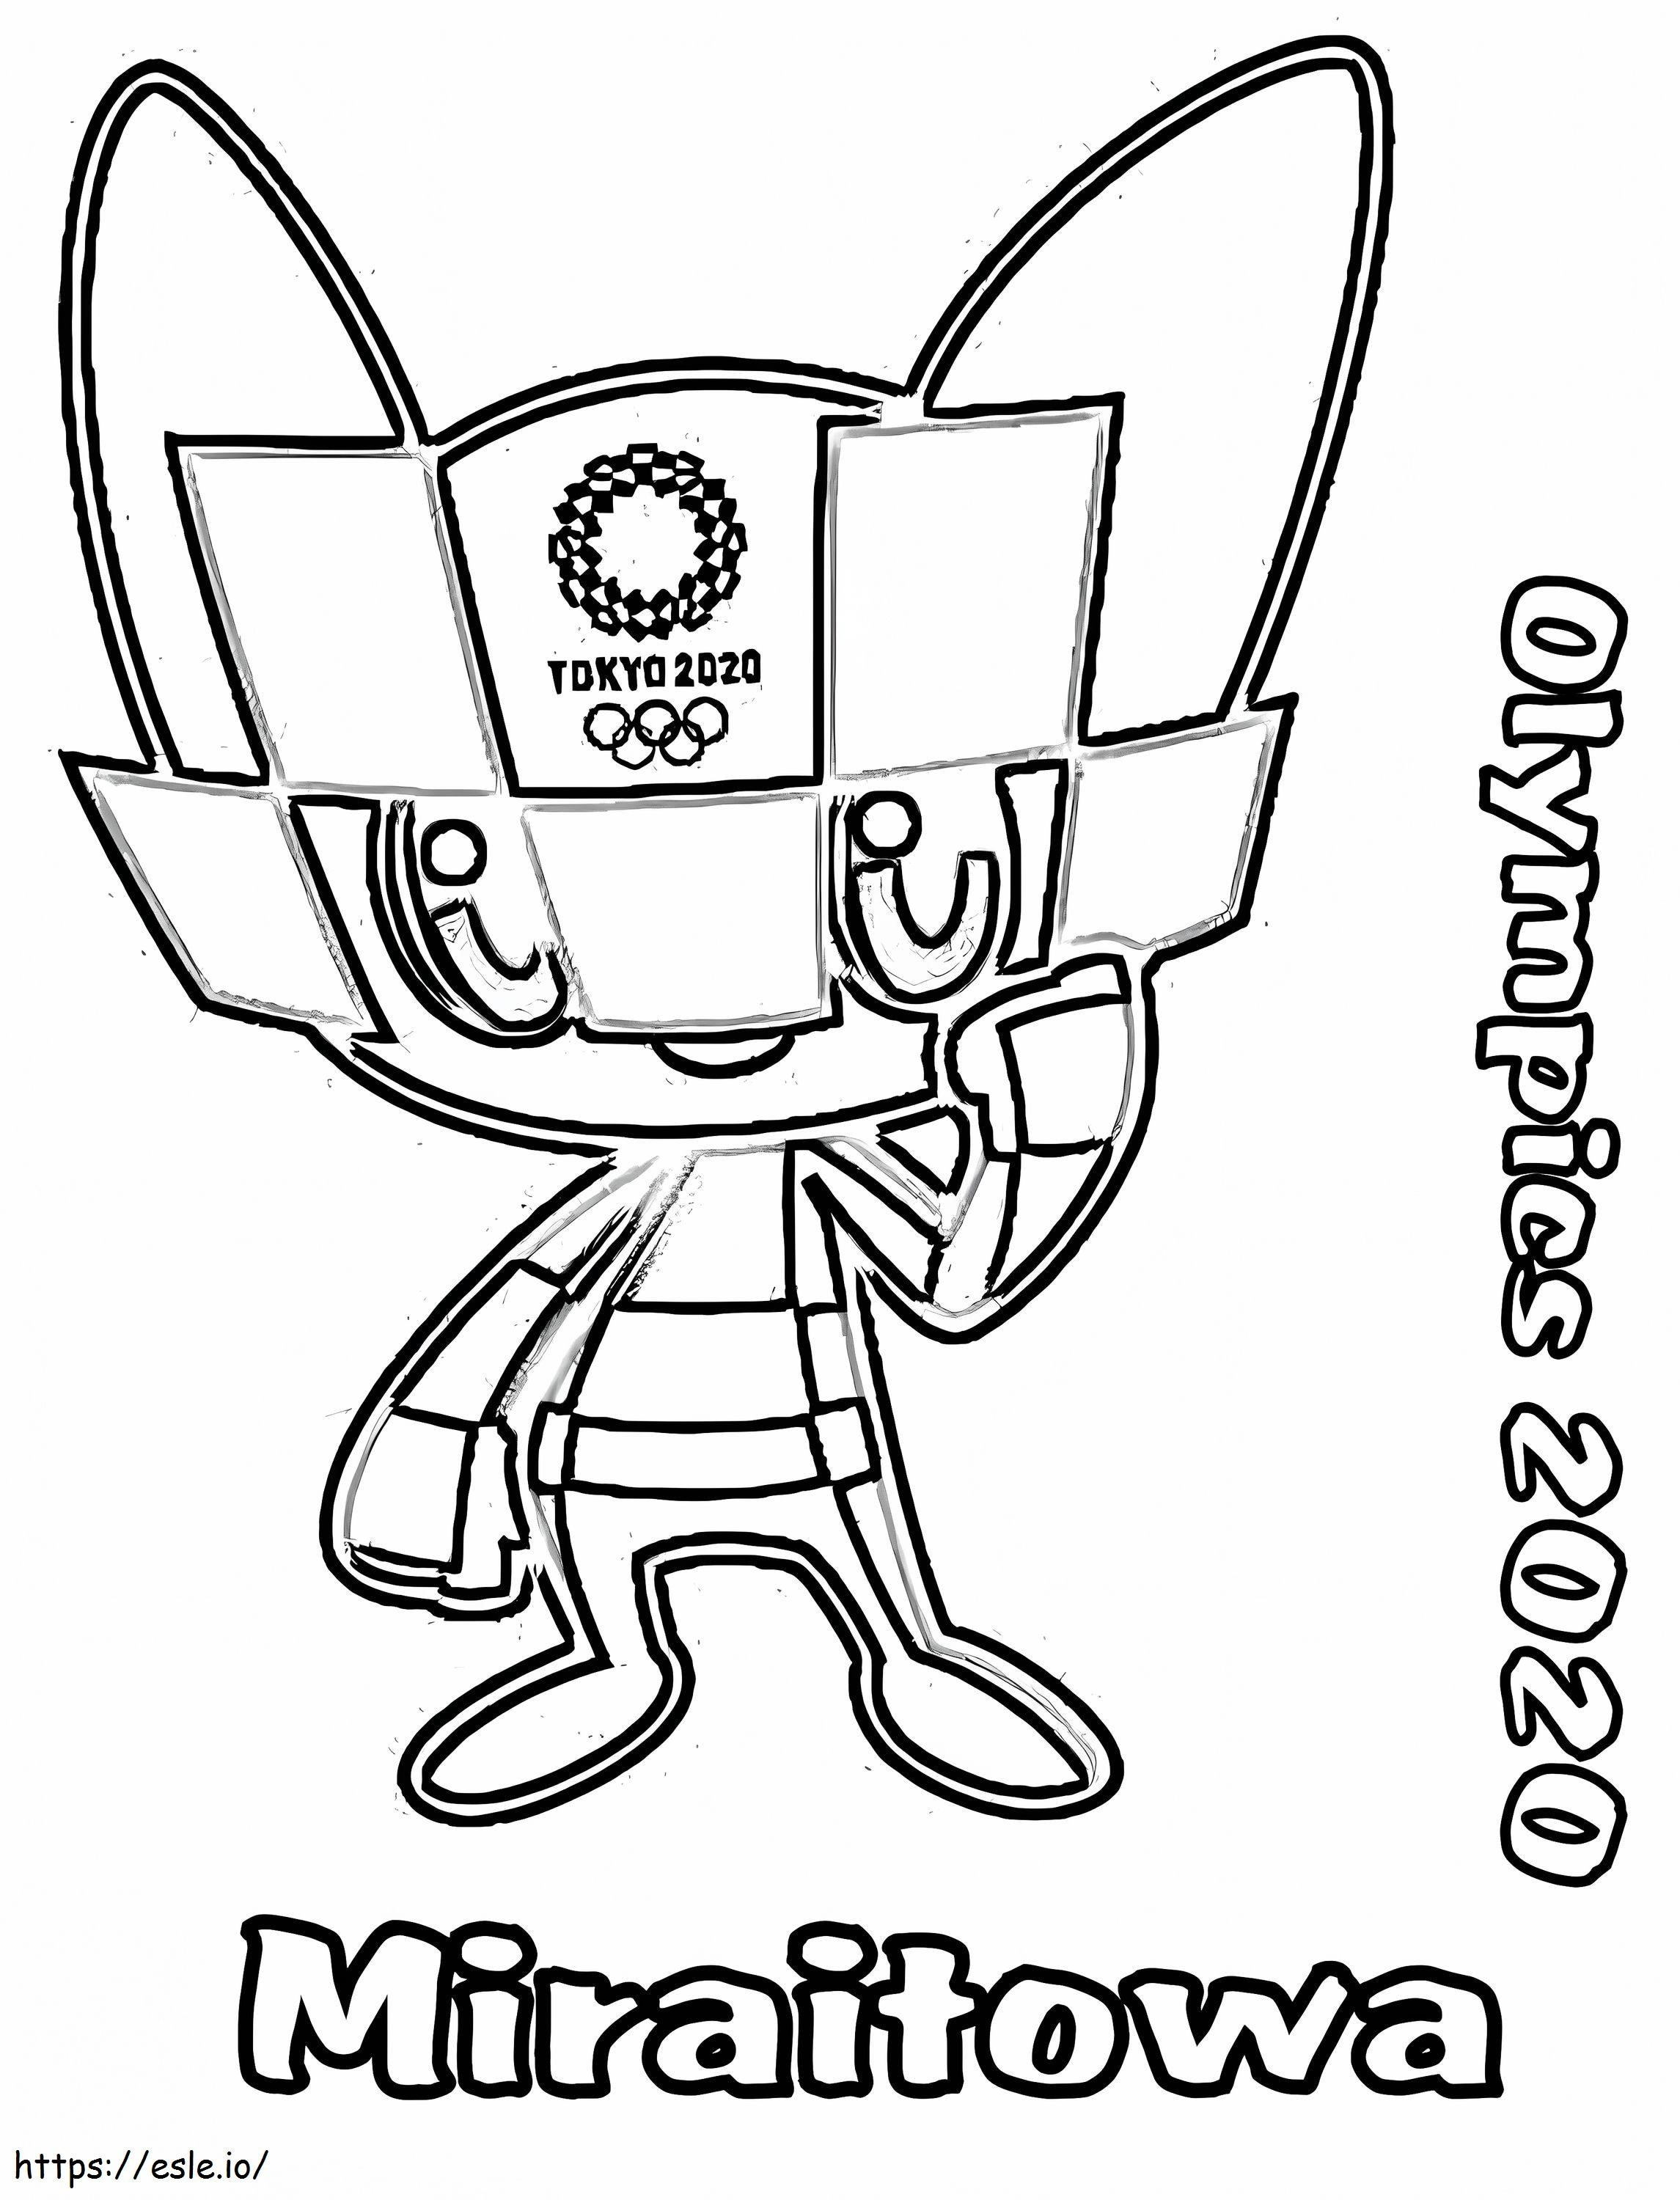 Olympische Spiele 2020 Miraitowa ausmalbilder